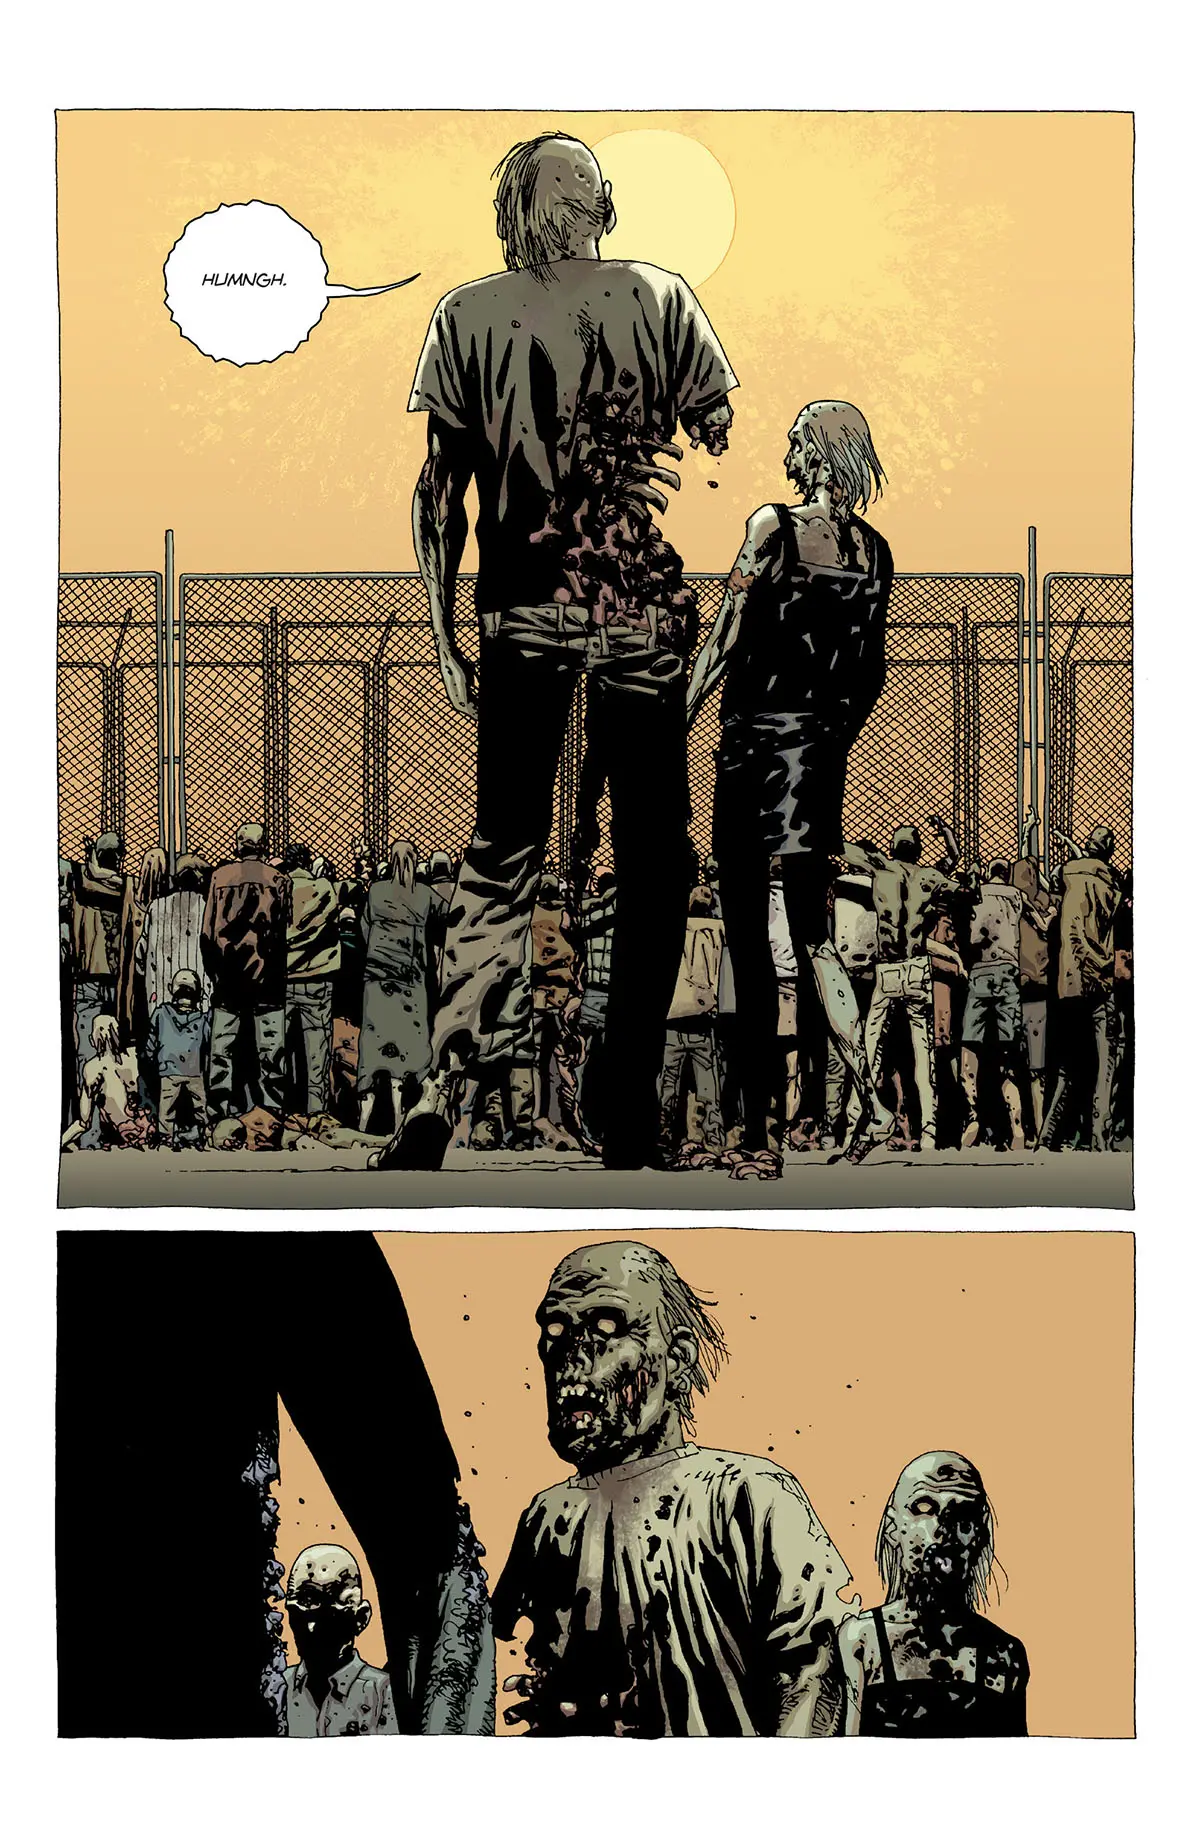 Walkers aglomerando na cerca de segurança da prisão na edição 20 da The Walking Dead Deluxe.